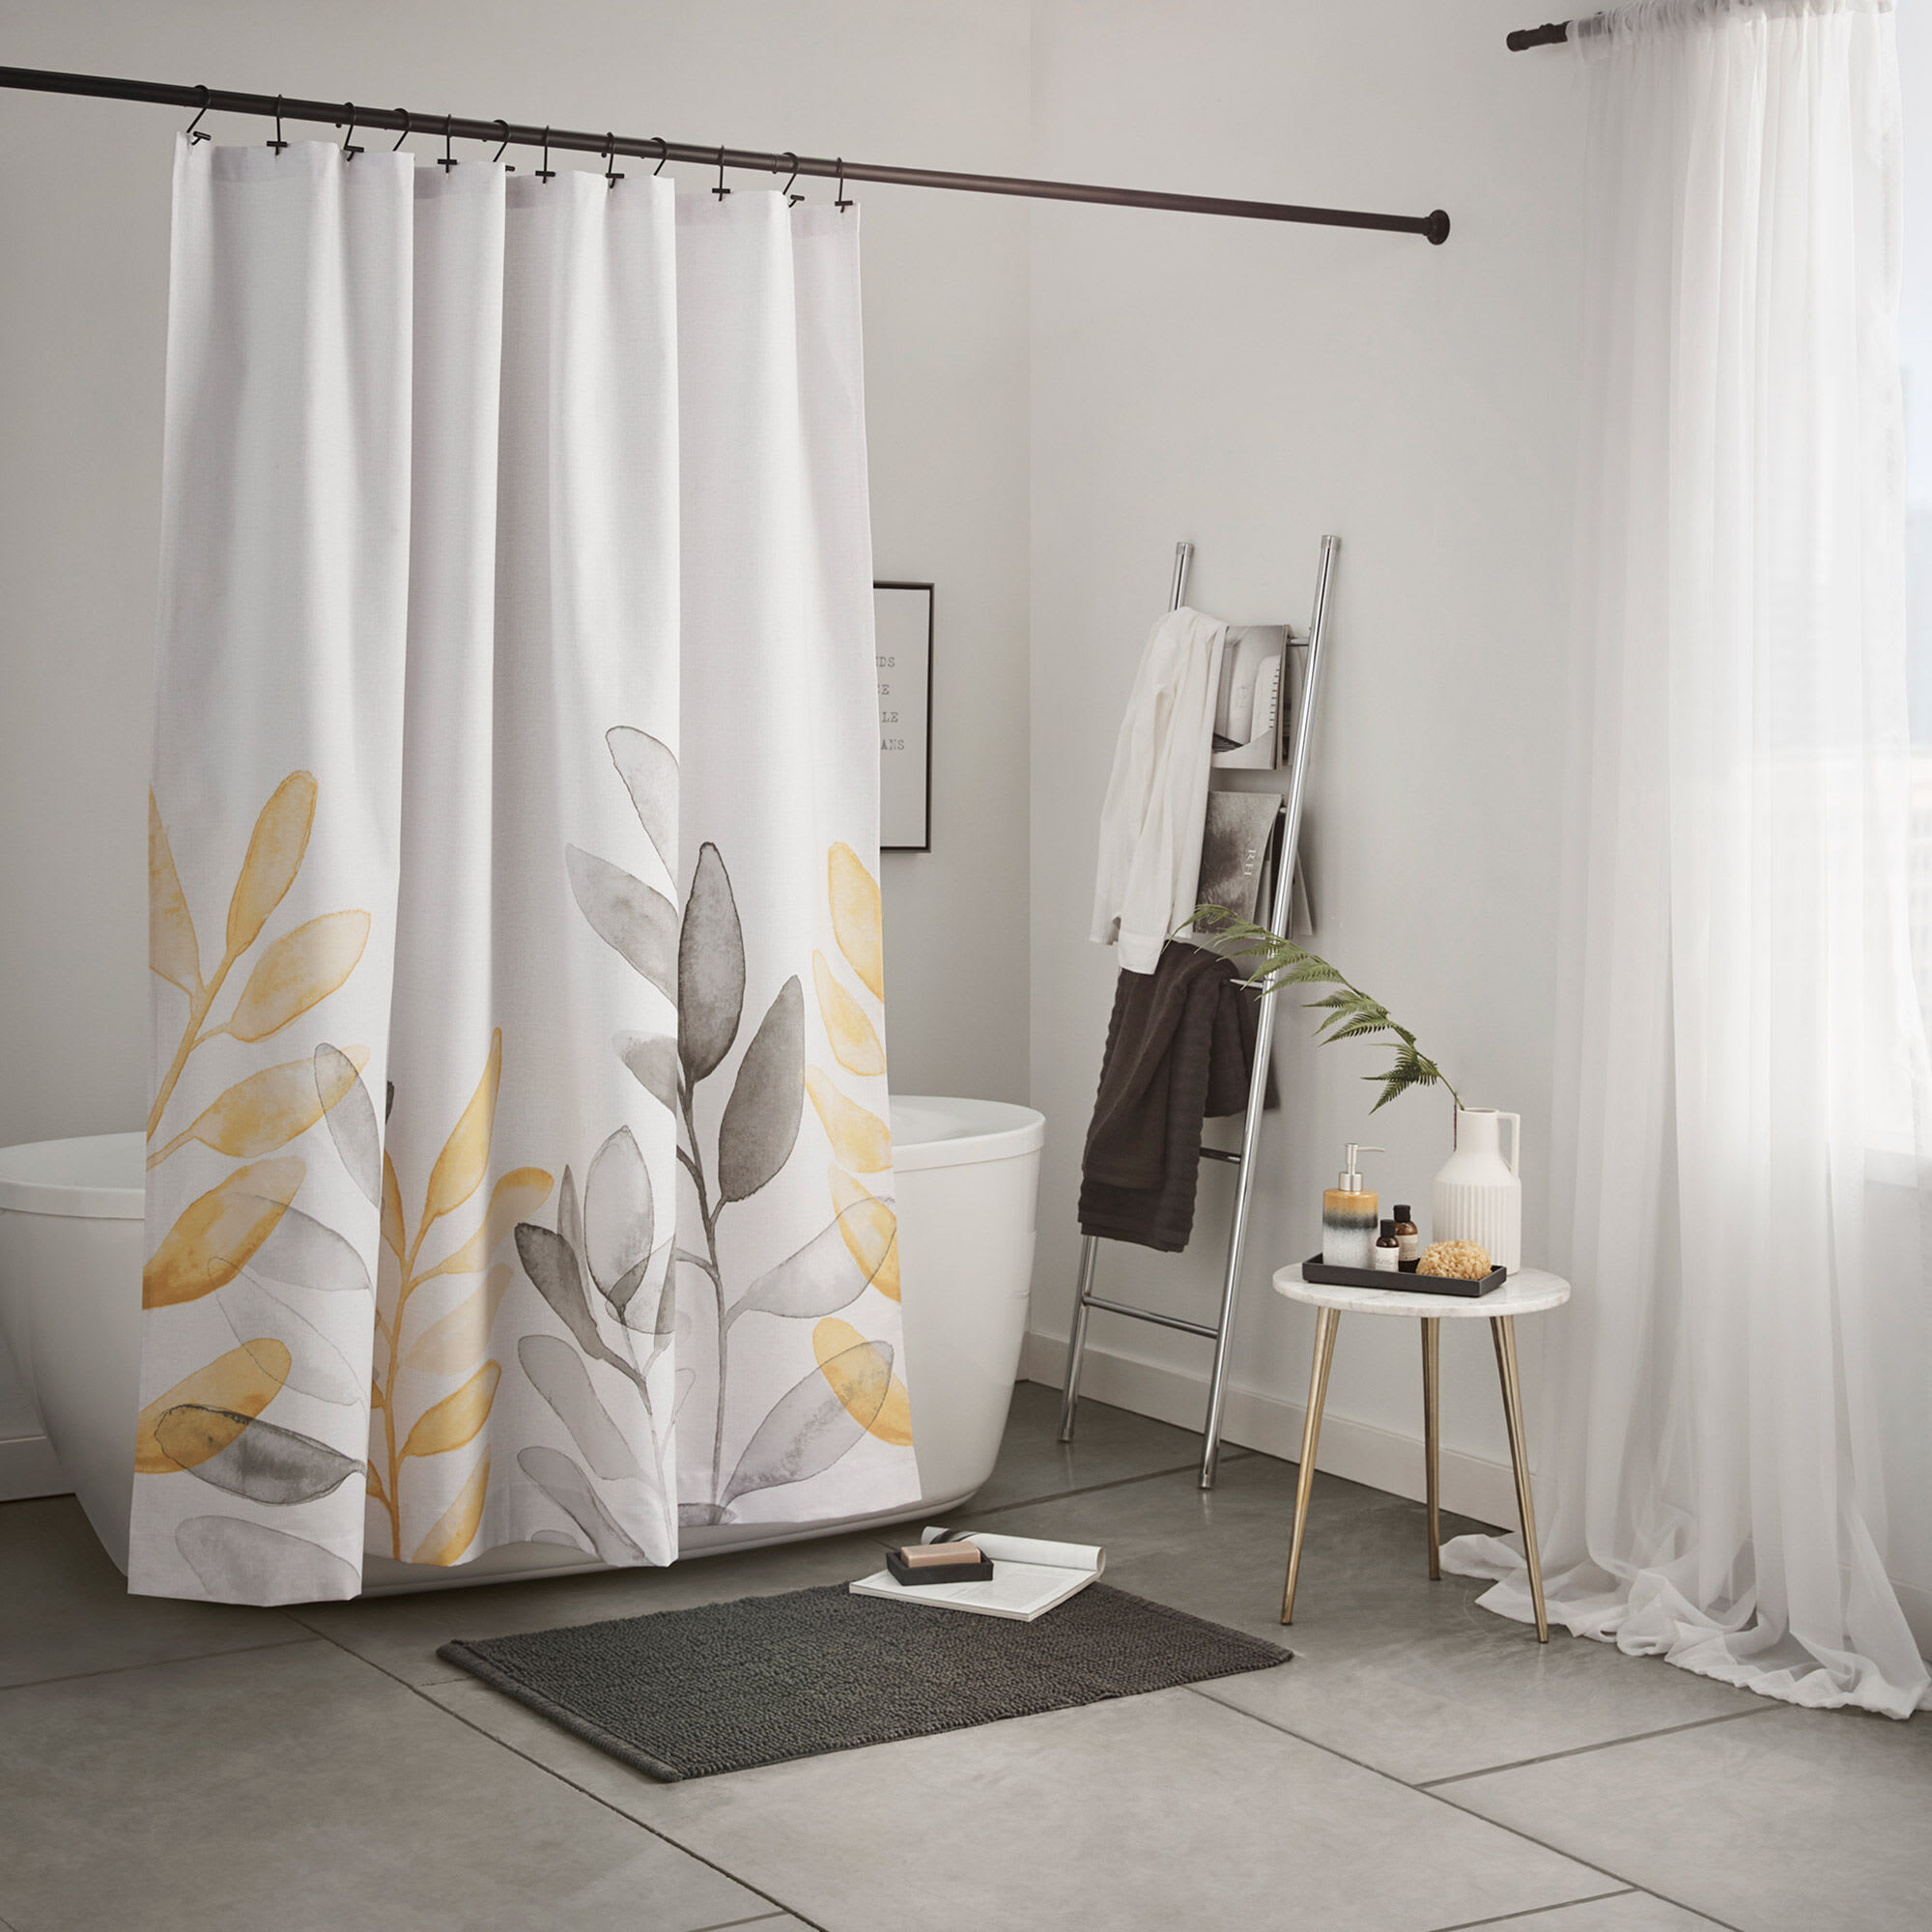 Đặc tính quan trọng của rèm nhà tắm là chống nước